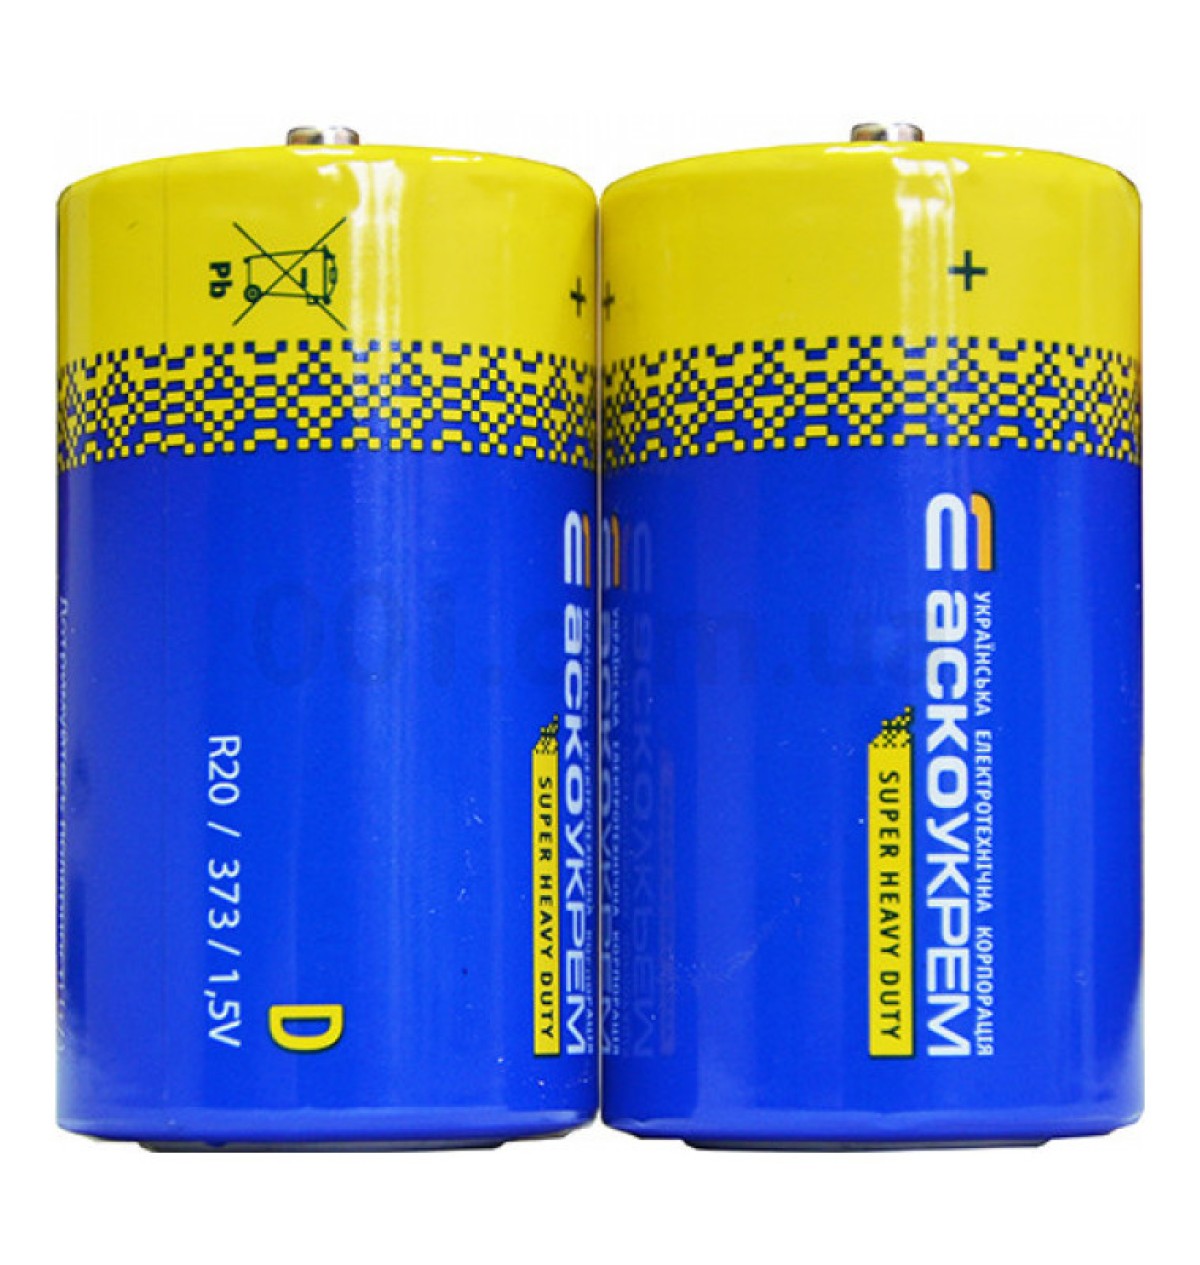 Батарейка солевая D.R20.SP2, типоразмер D упаковка shrink 2 шт., АСКО-УКРЕМ 256_270.jpg